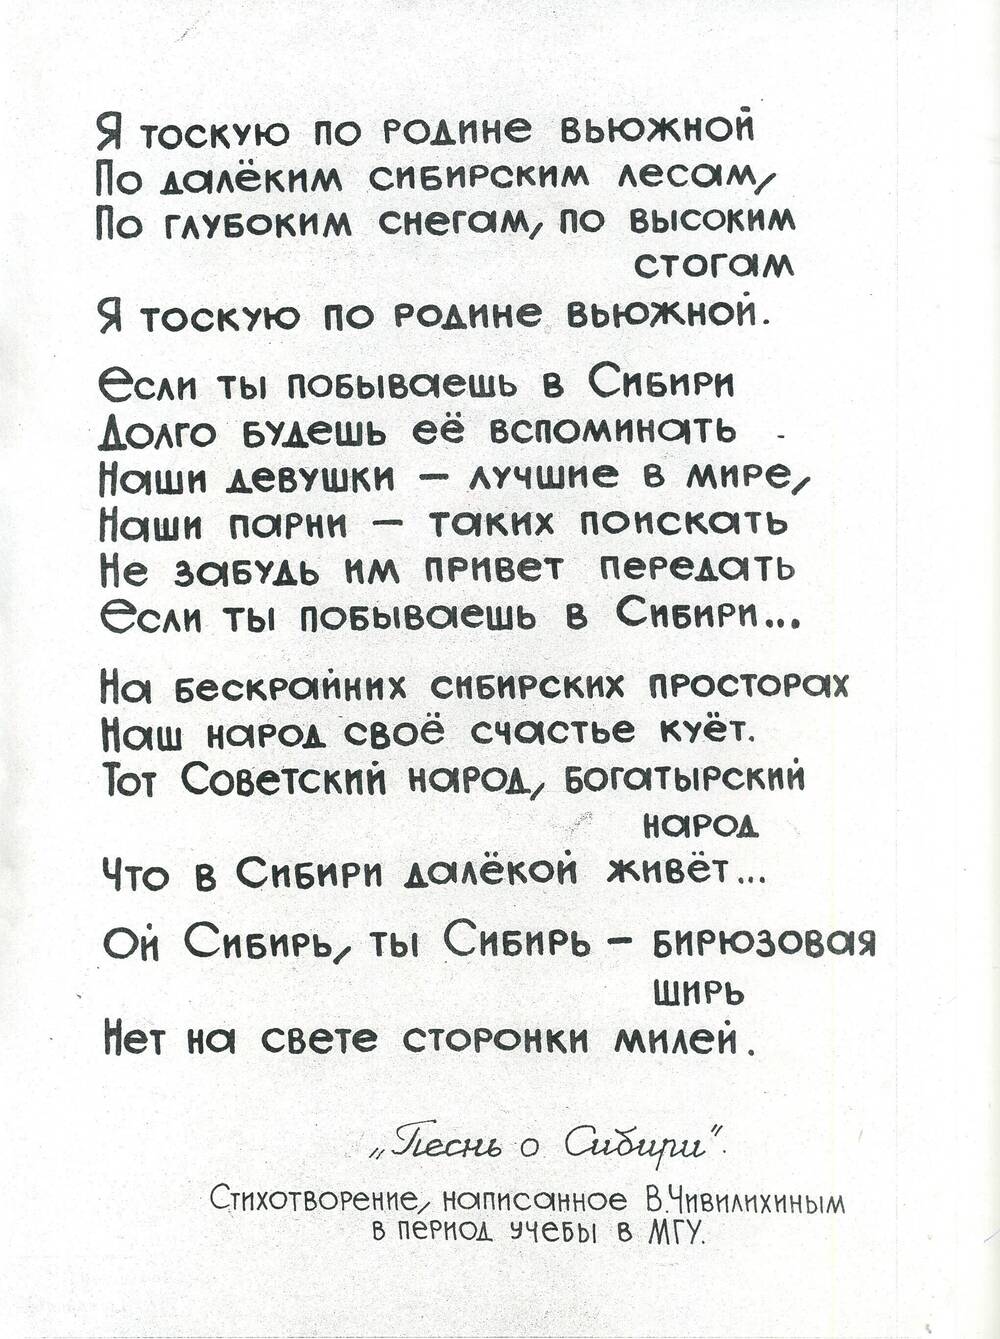 Текст стихотворения Песнь о Сибири, написанное В.А. Чивилихиным в период обучения в МГУ.